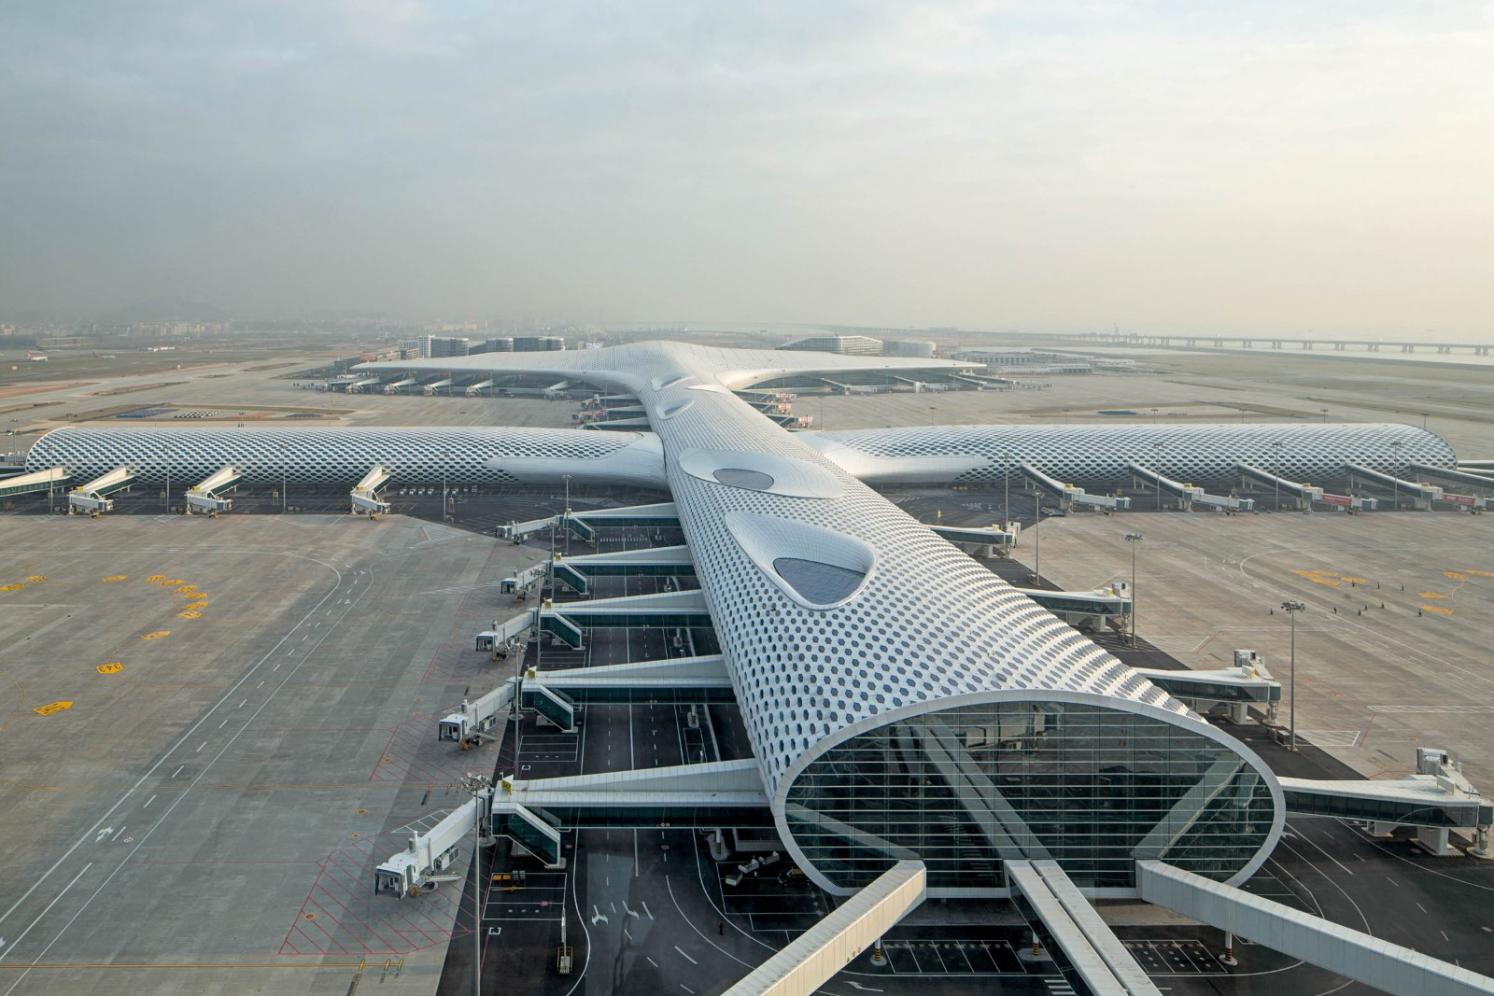 Shenzhen Airport